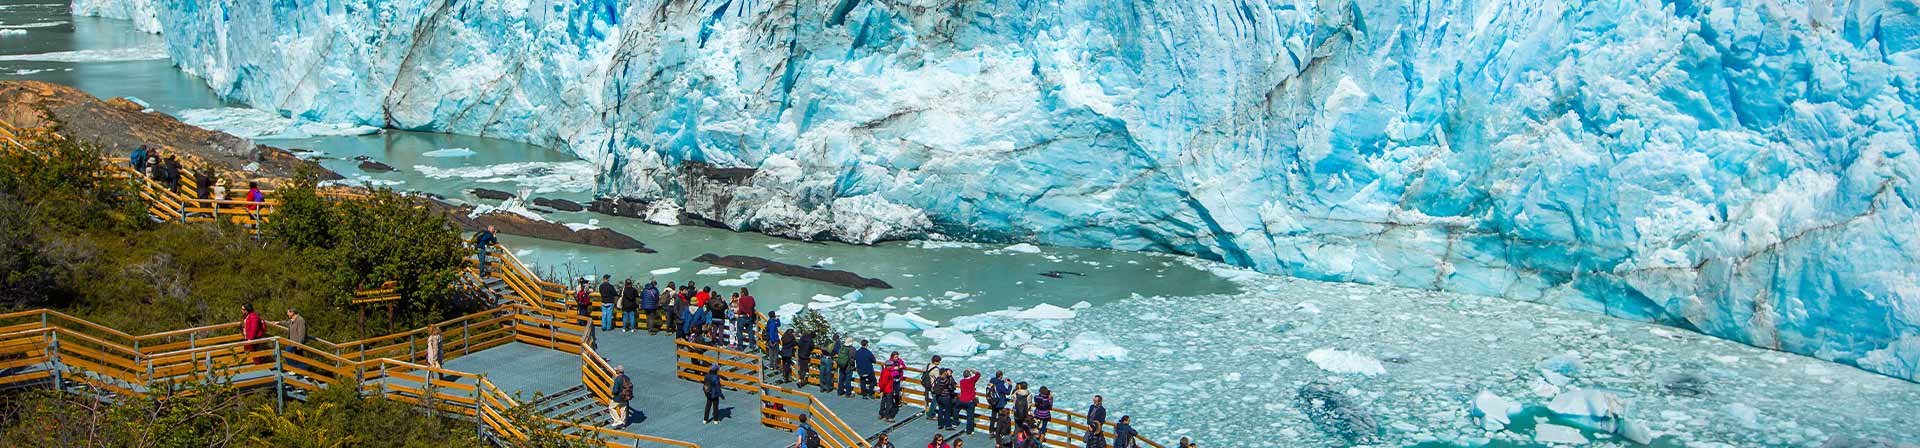 Patagonia argentina: 3 destinos imperdibles para las vacaciones de invierno